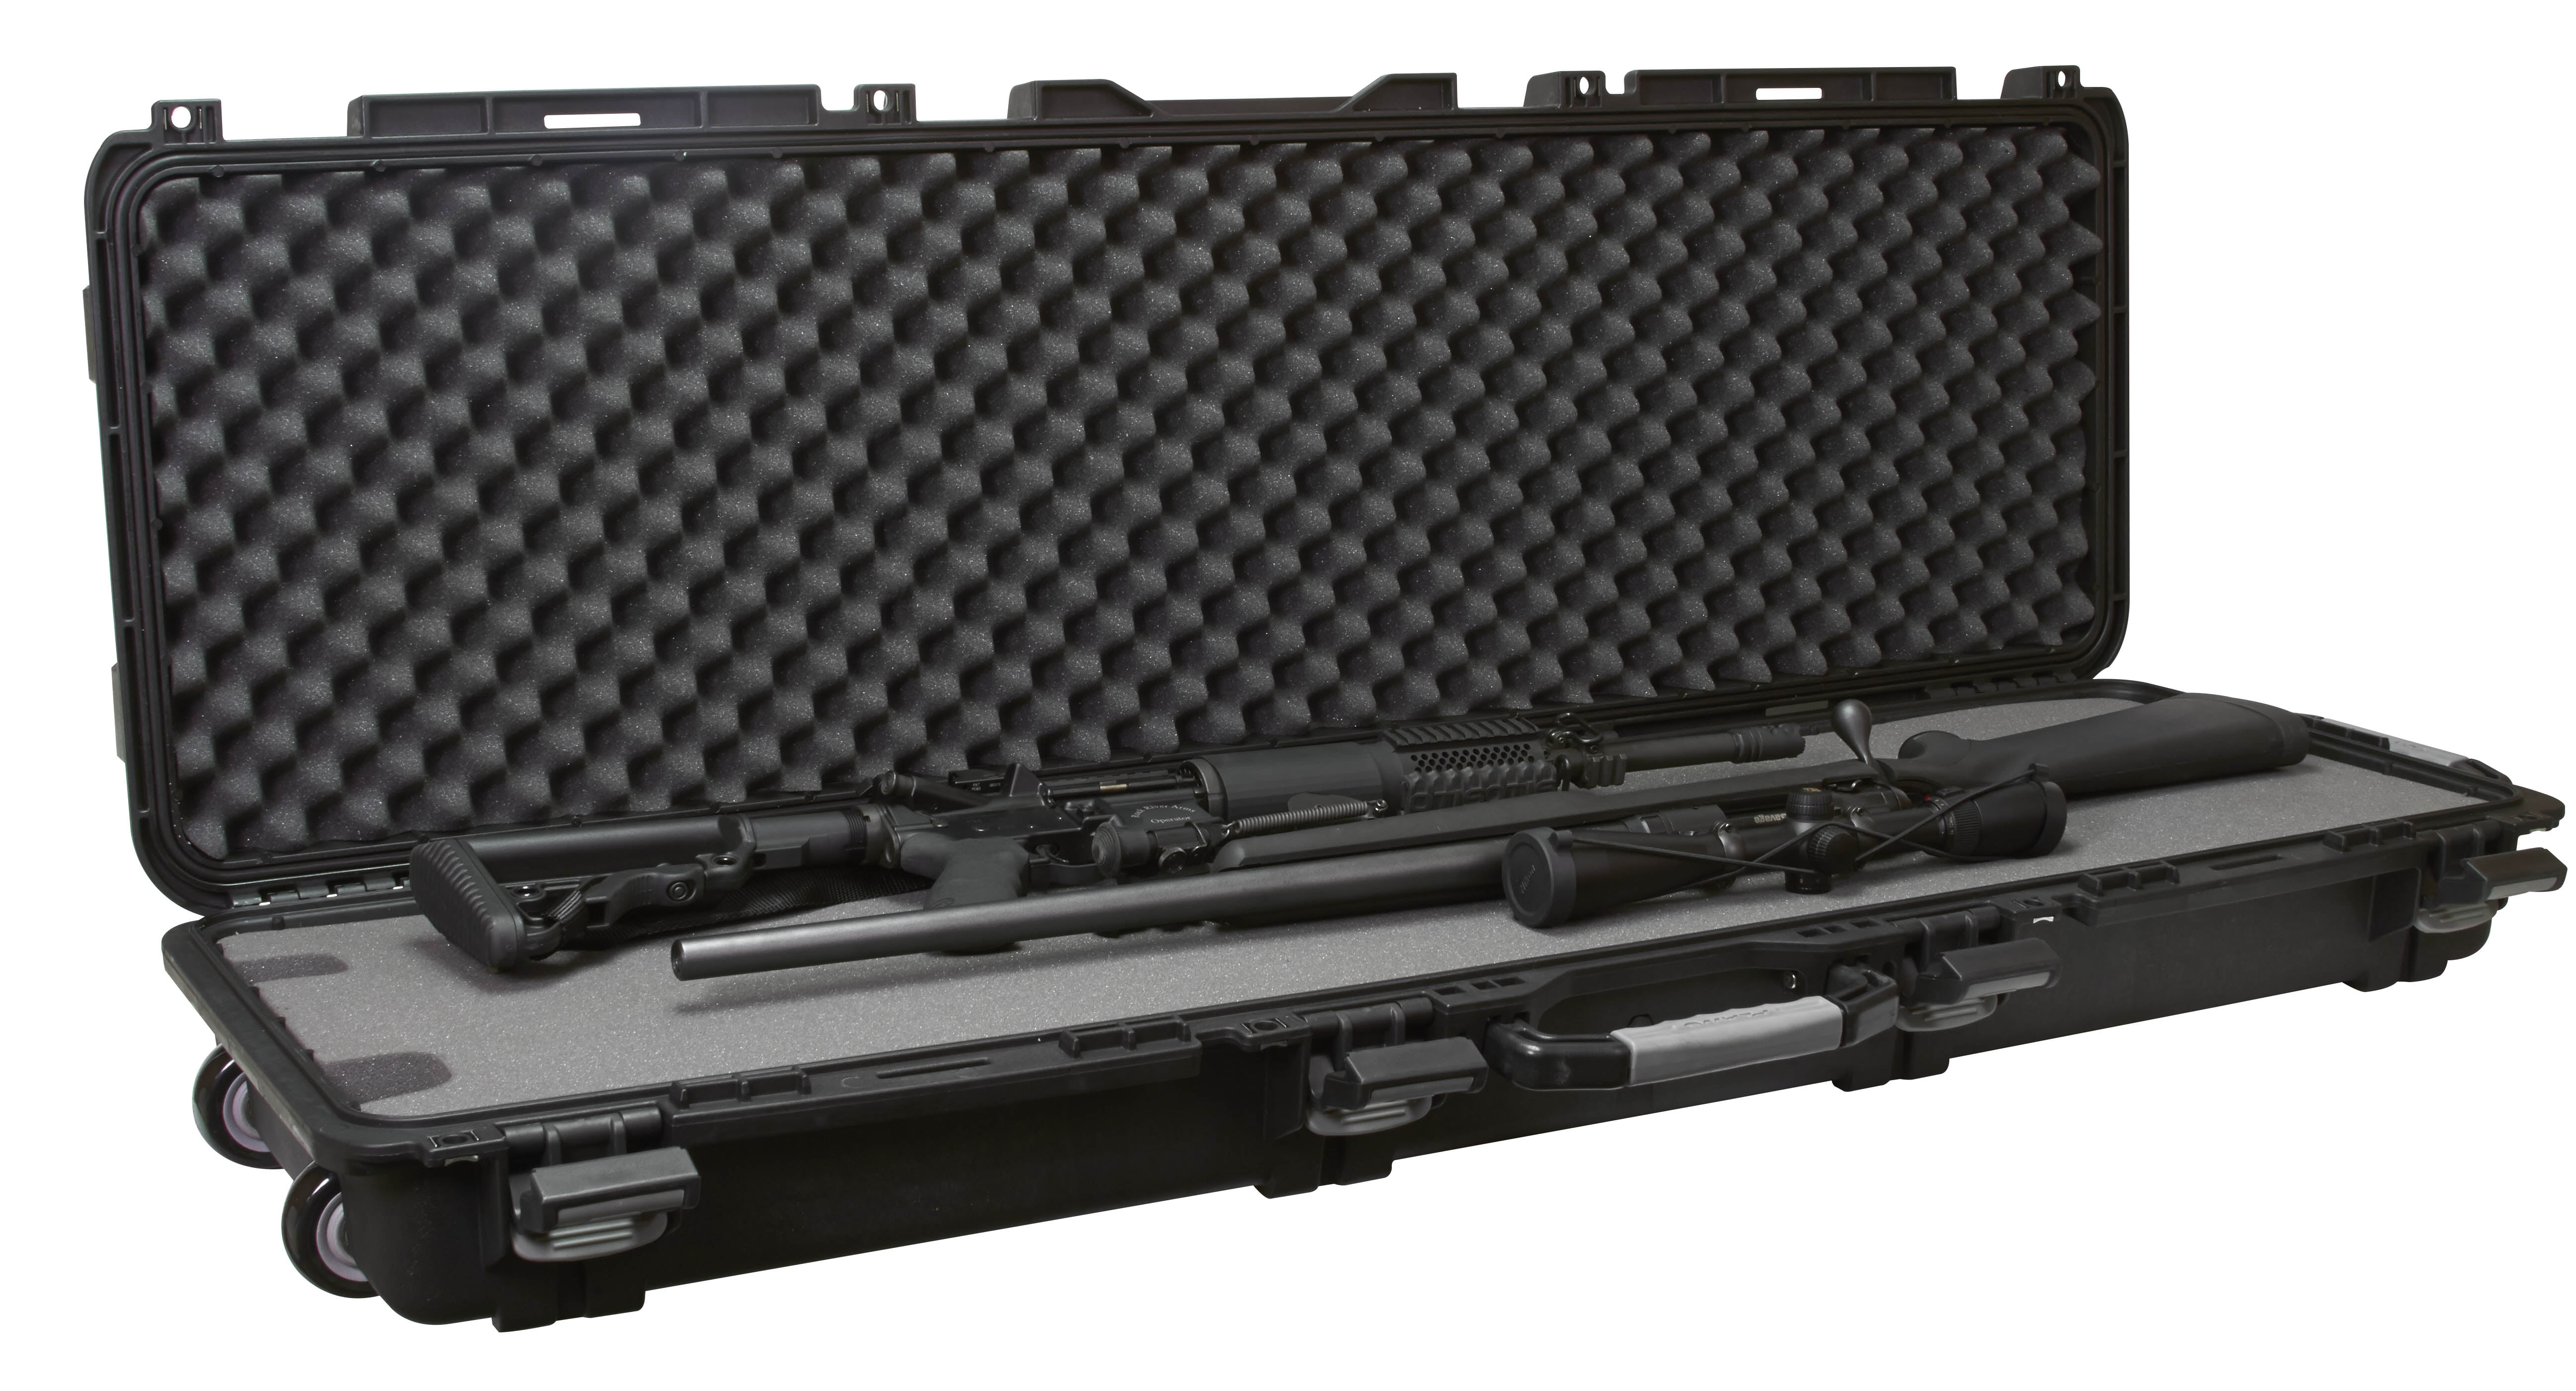 Plano Inch Hard Sided Tactical Shotgun Rifle Long Gun Case Black | My ...